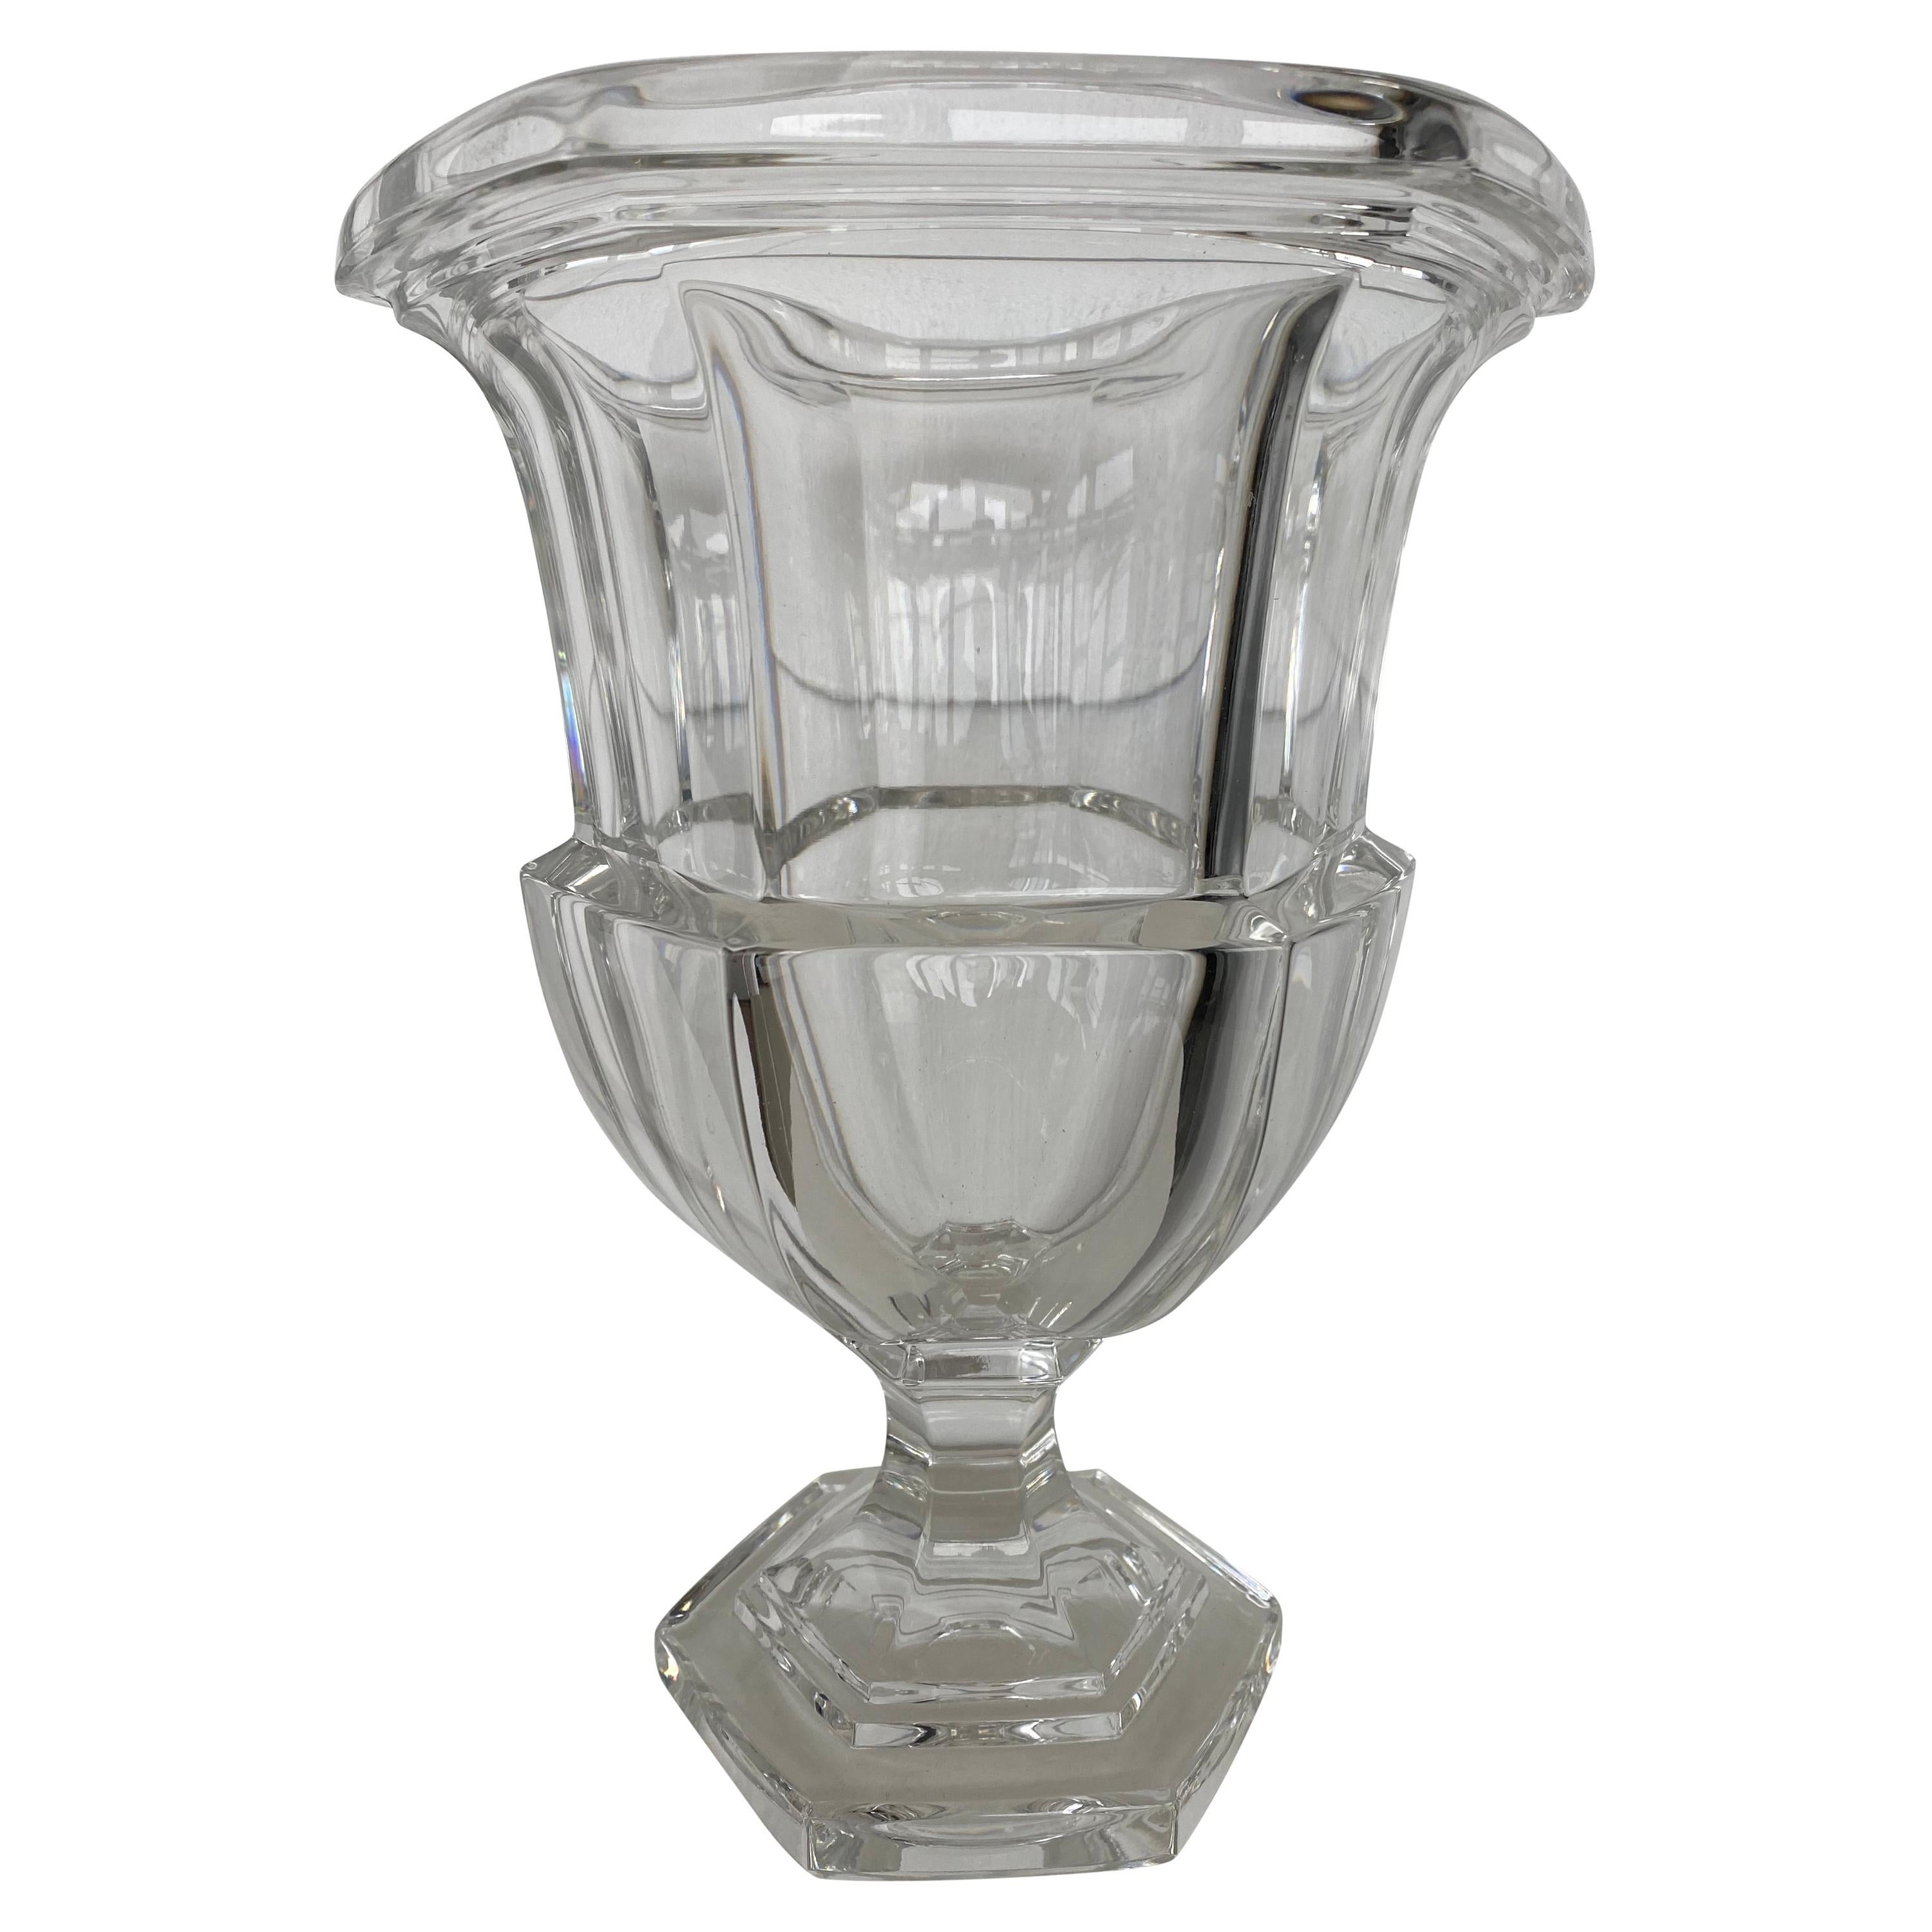 Tiffany & Co. Crystal Vase of Campana Form